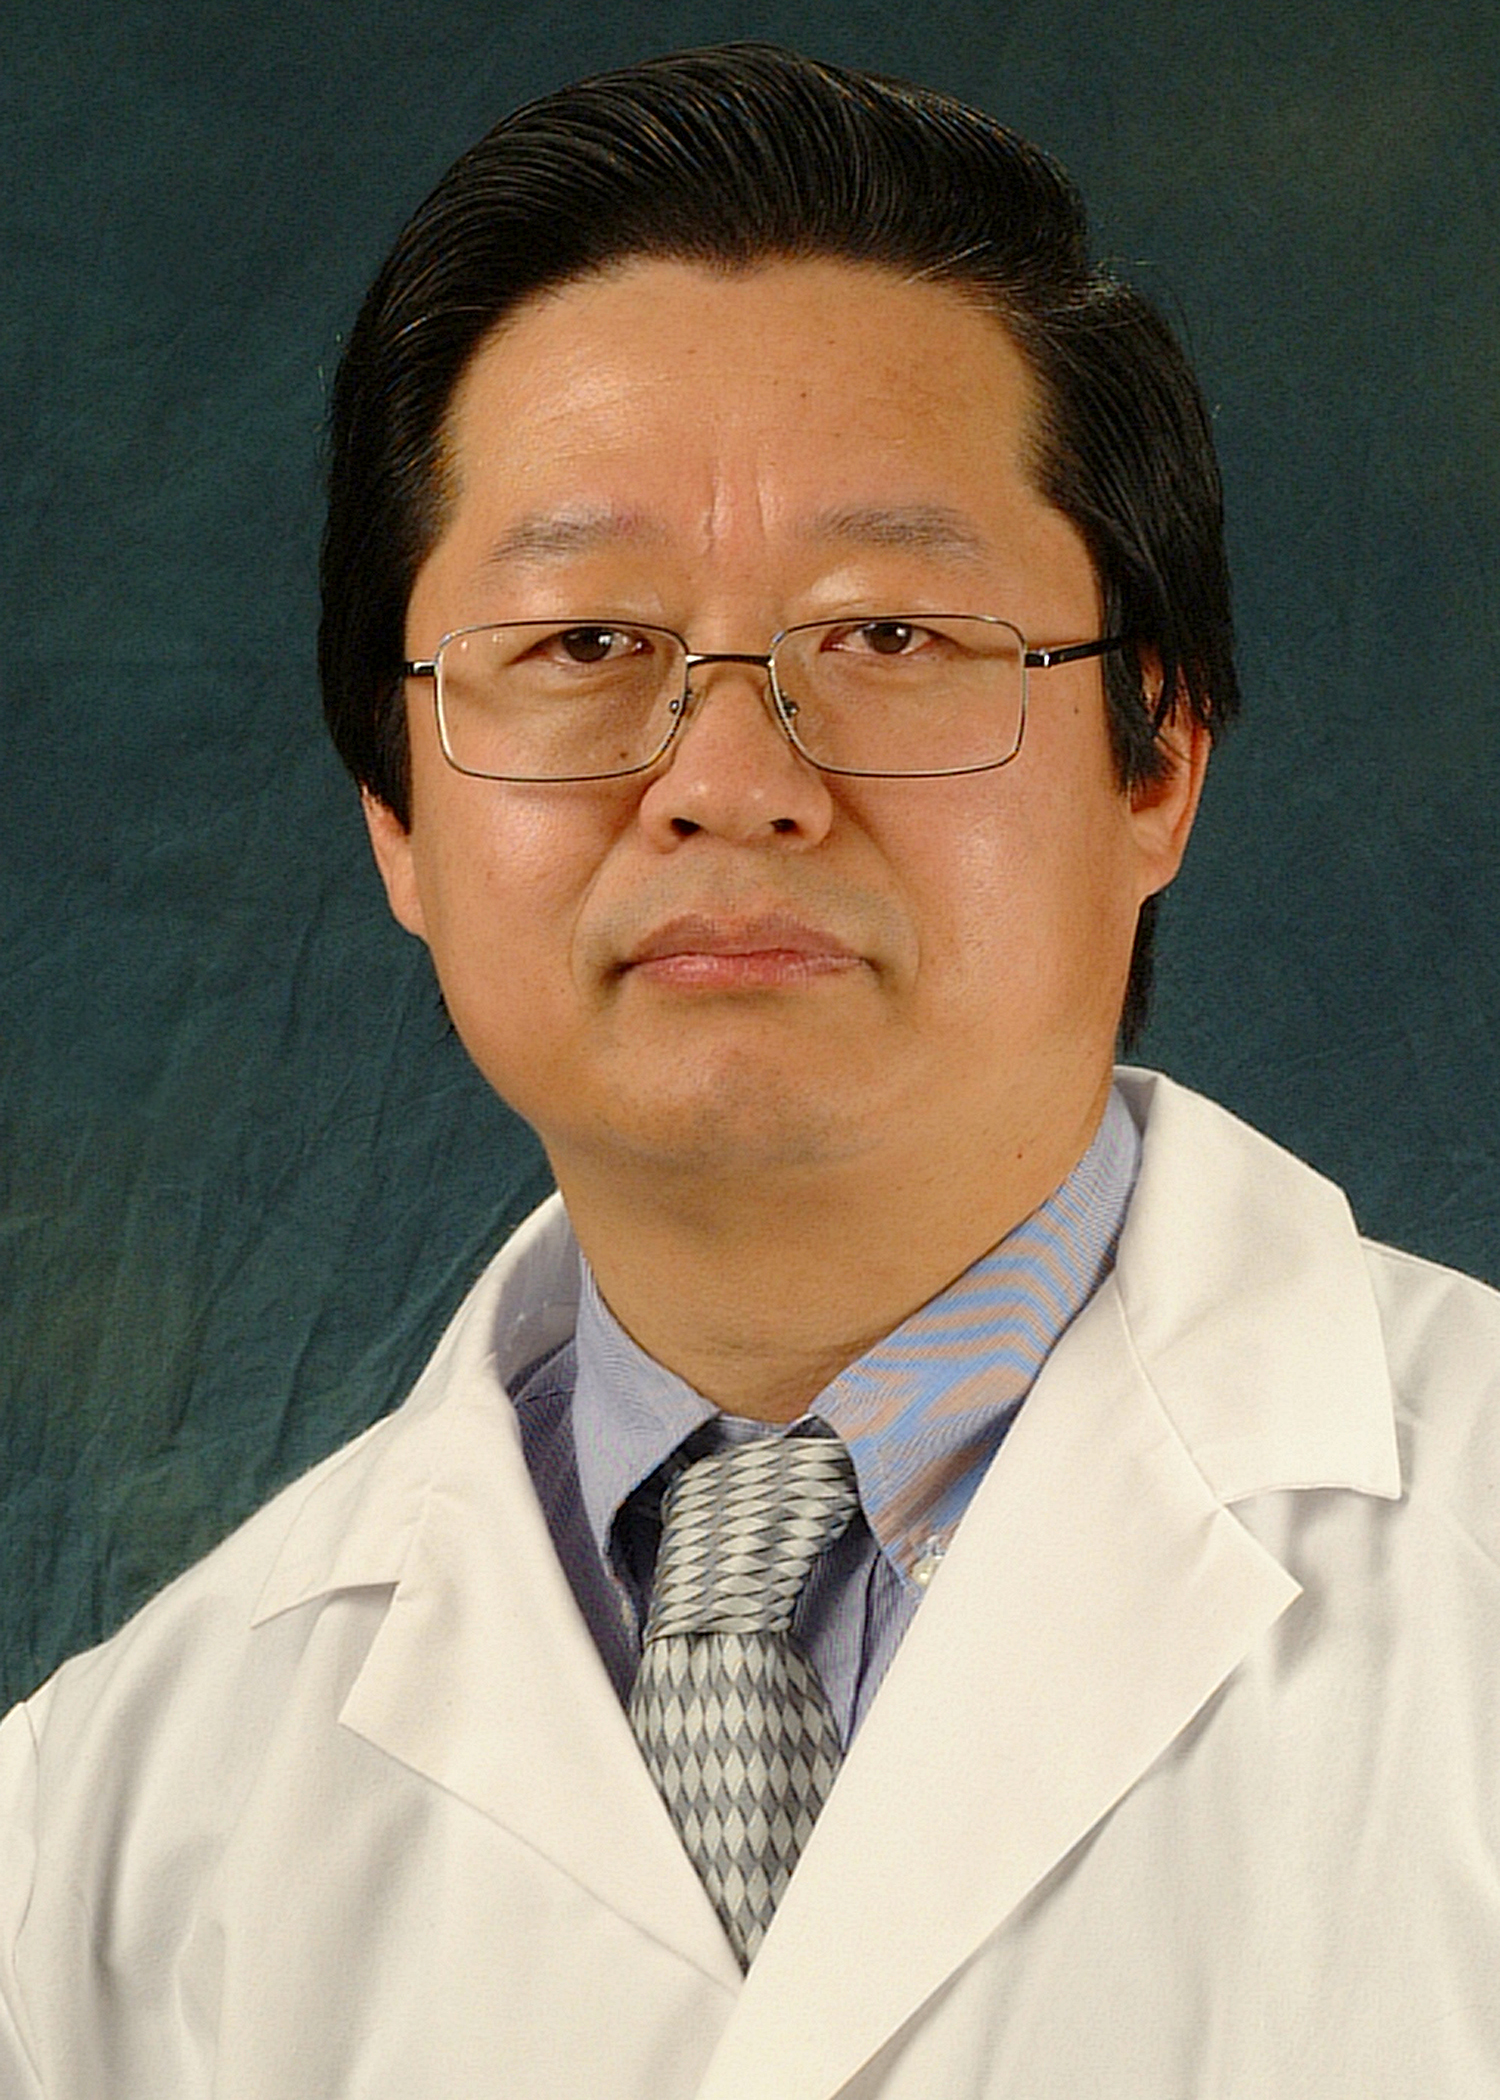 Dr. X. J. Meng